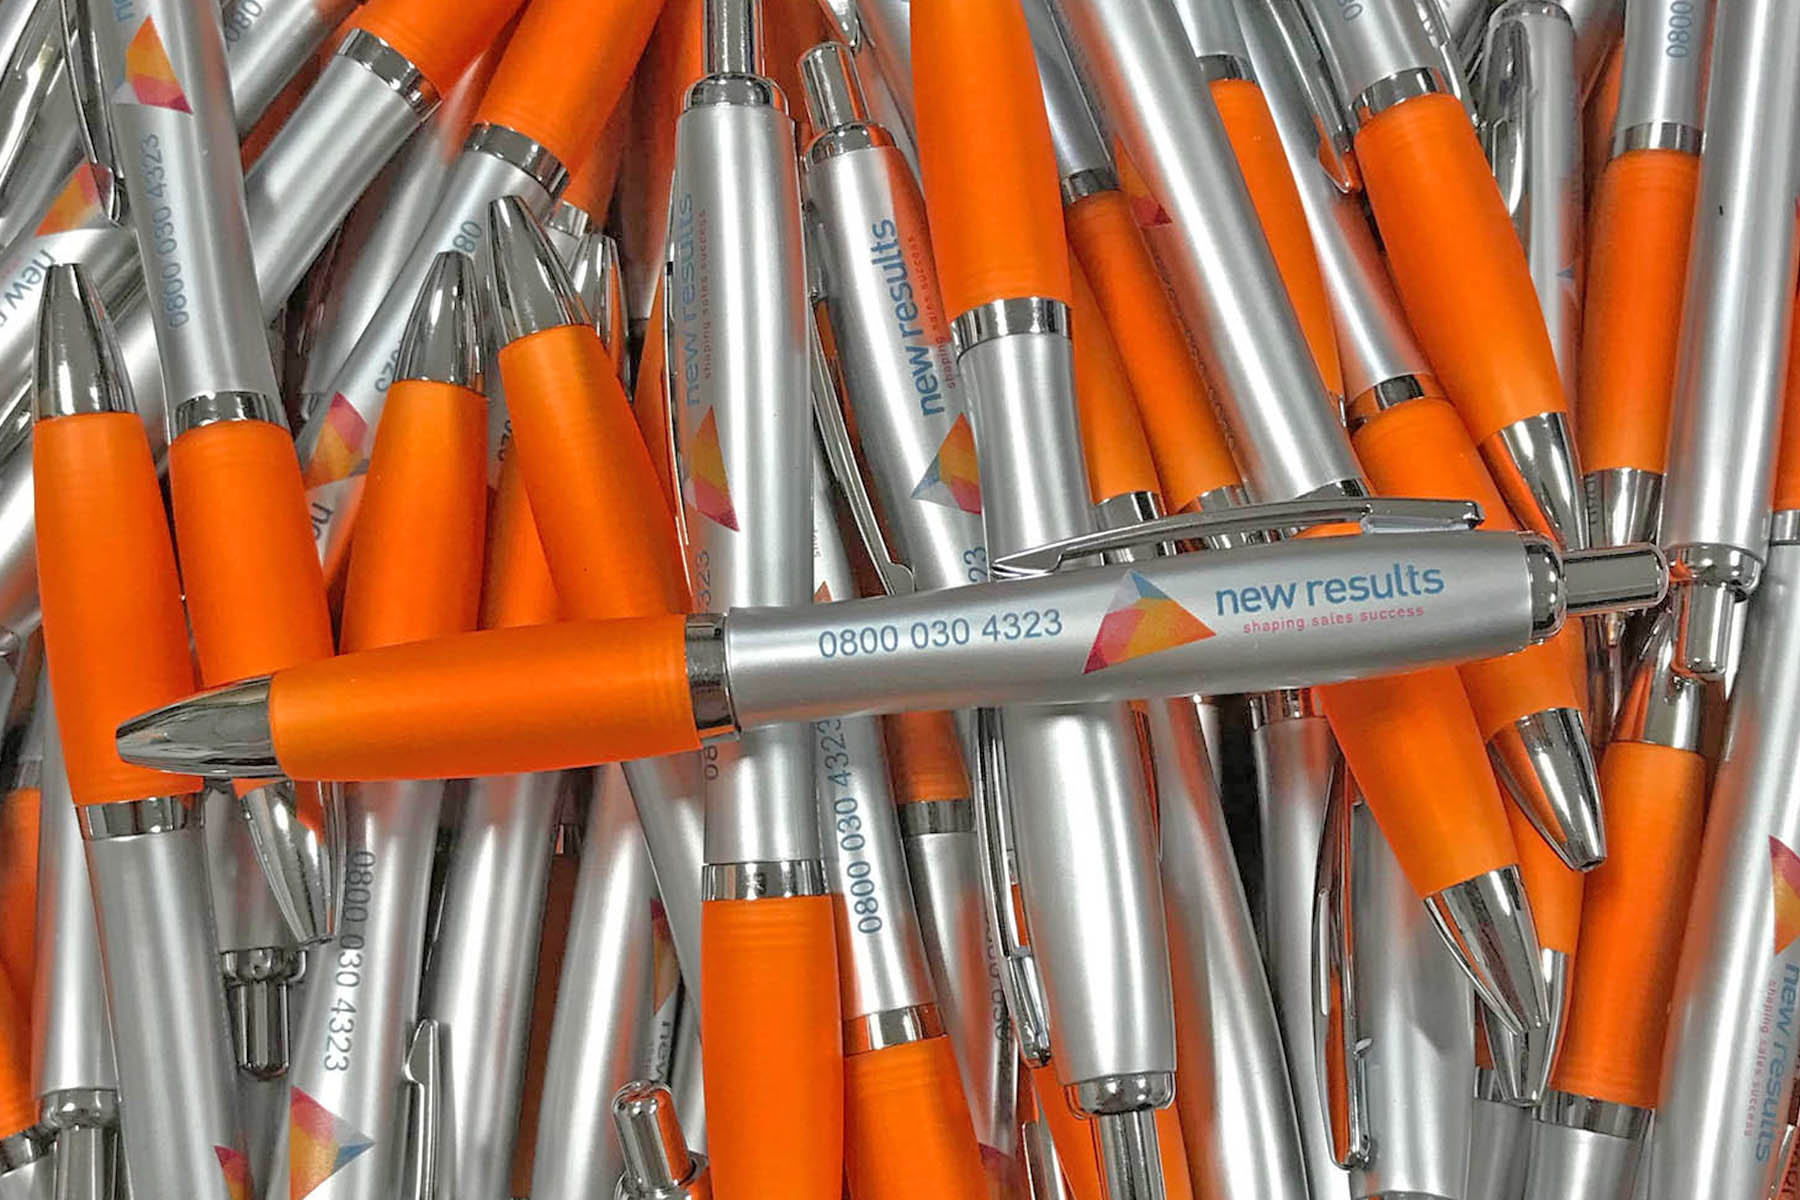 branded pens